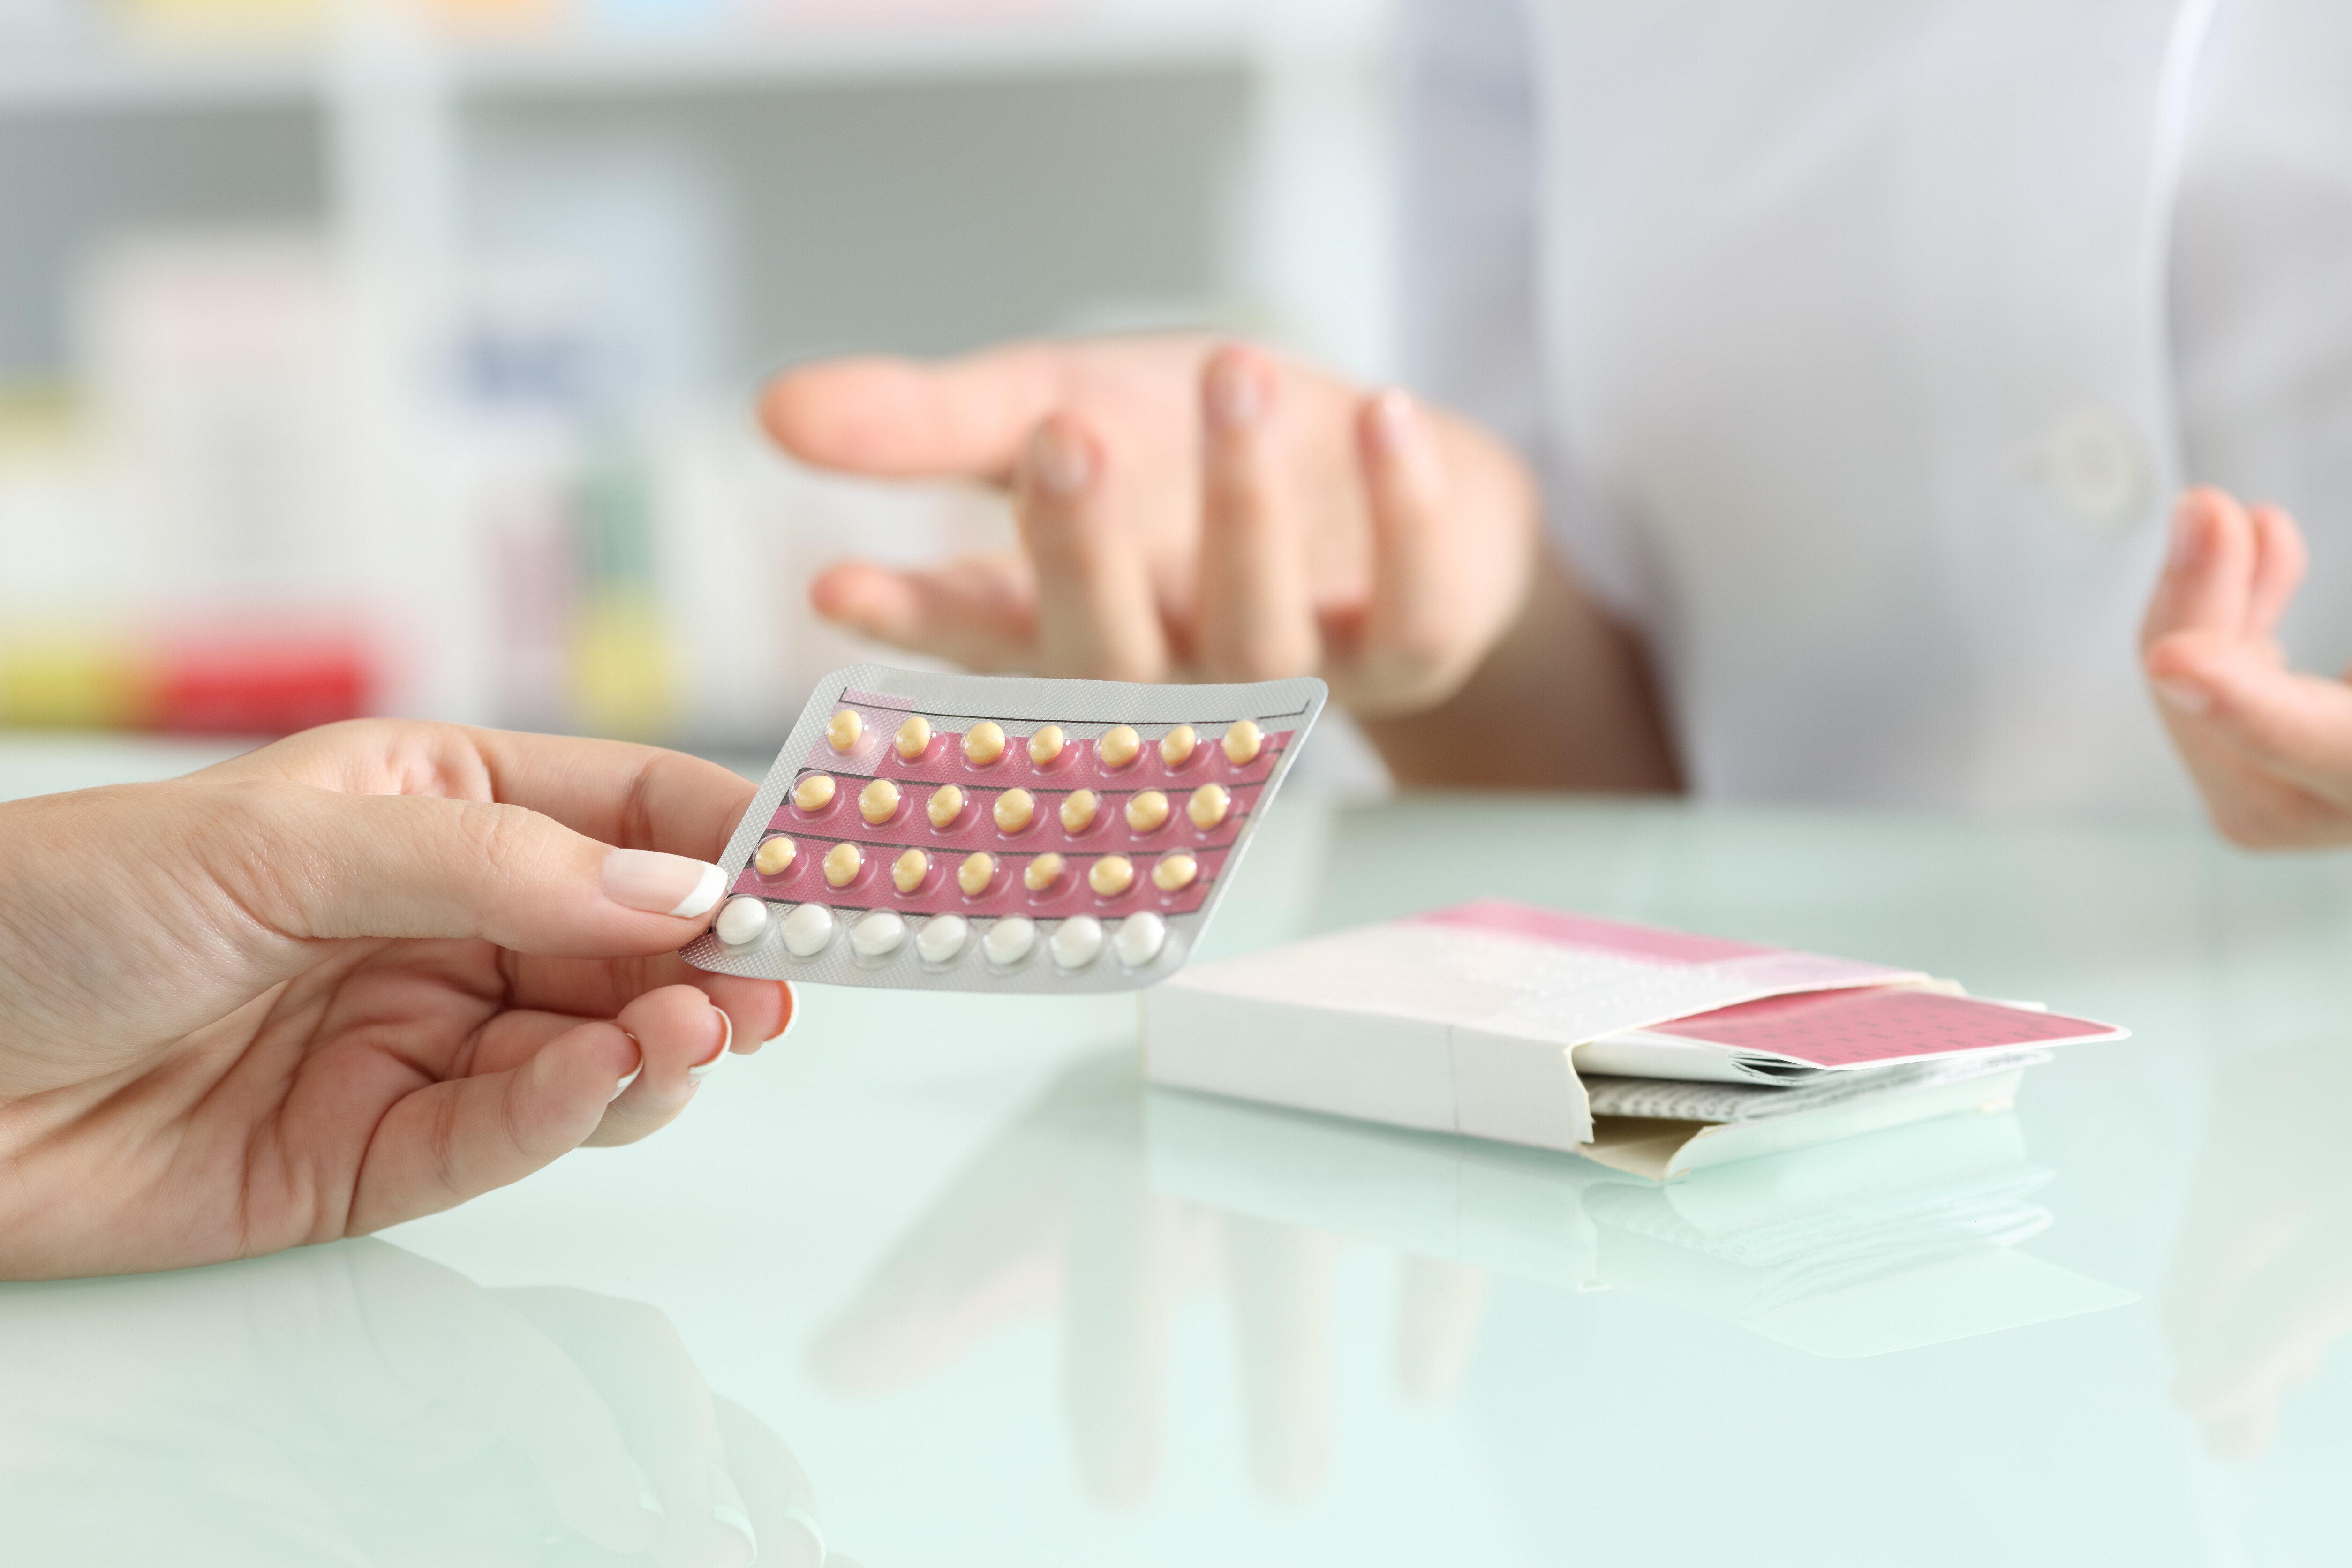 A imagem mostra duas mãos, uma delas segurando uma cartela de remédio contraceptivo.